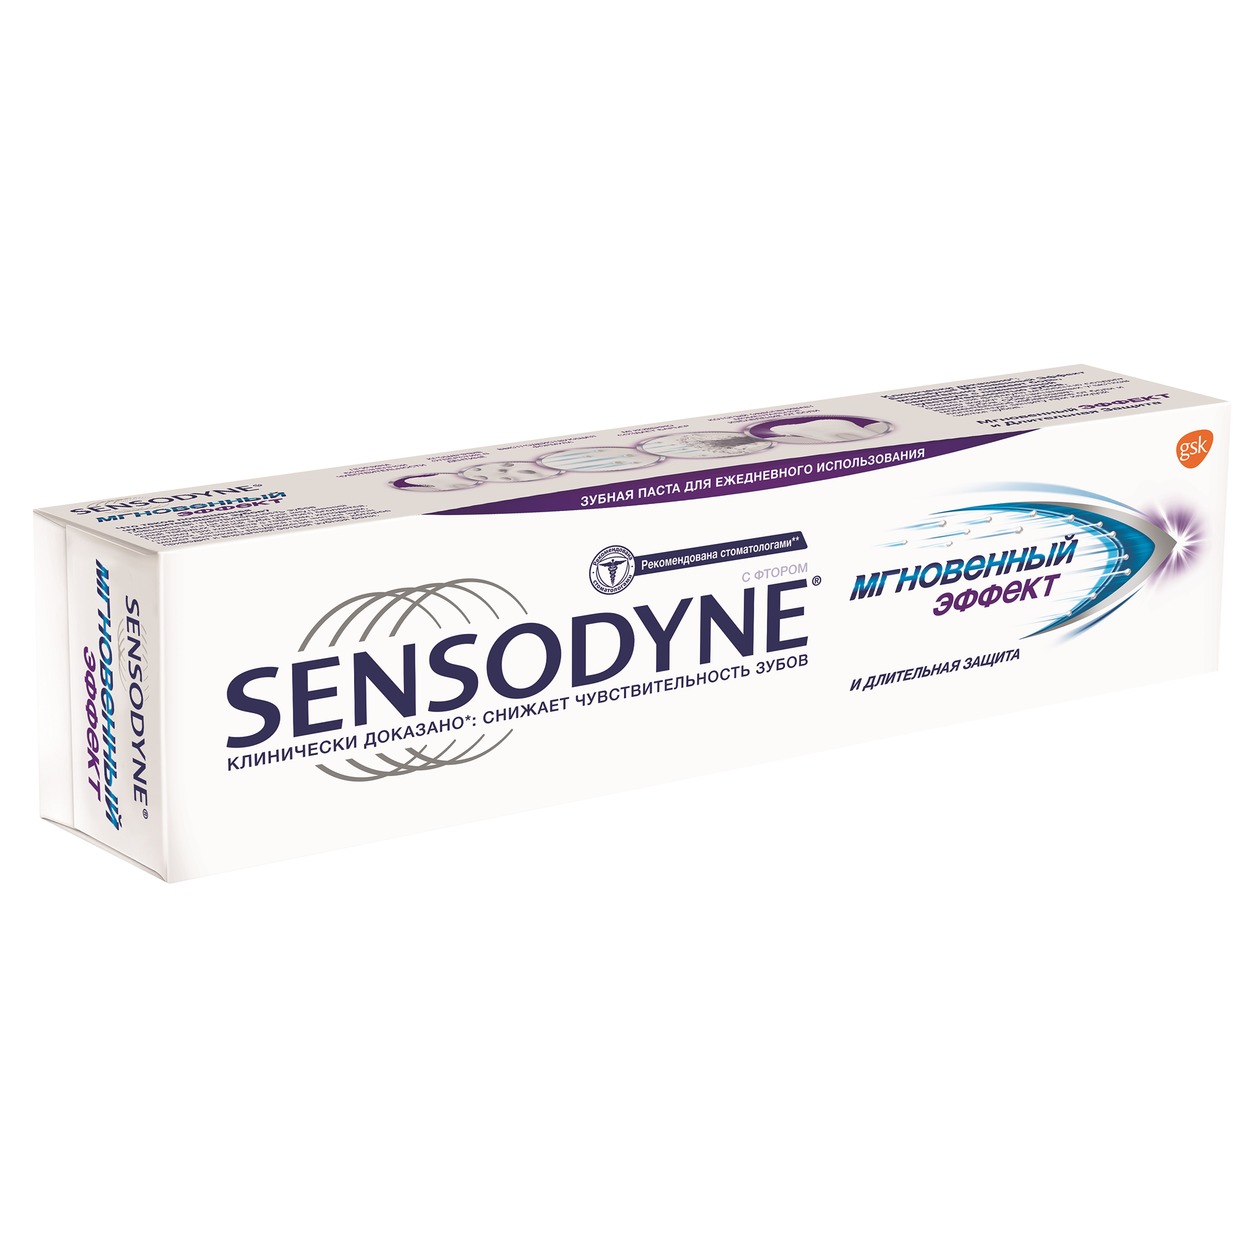 Зубная паста Sensodyne, мгновенный эффект, 75 мл по акции в Пятерочке